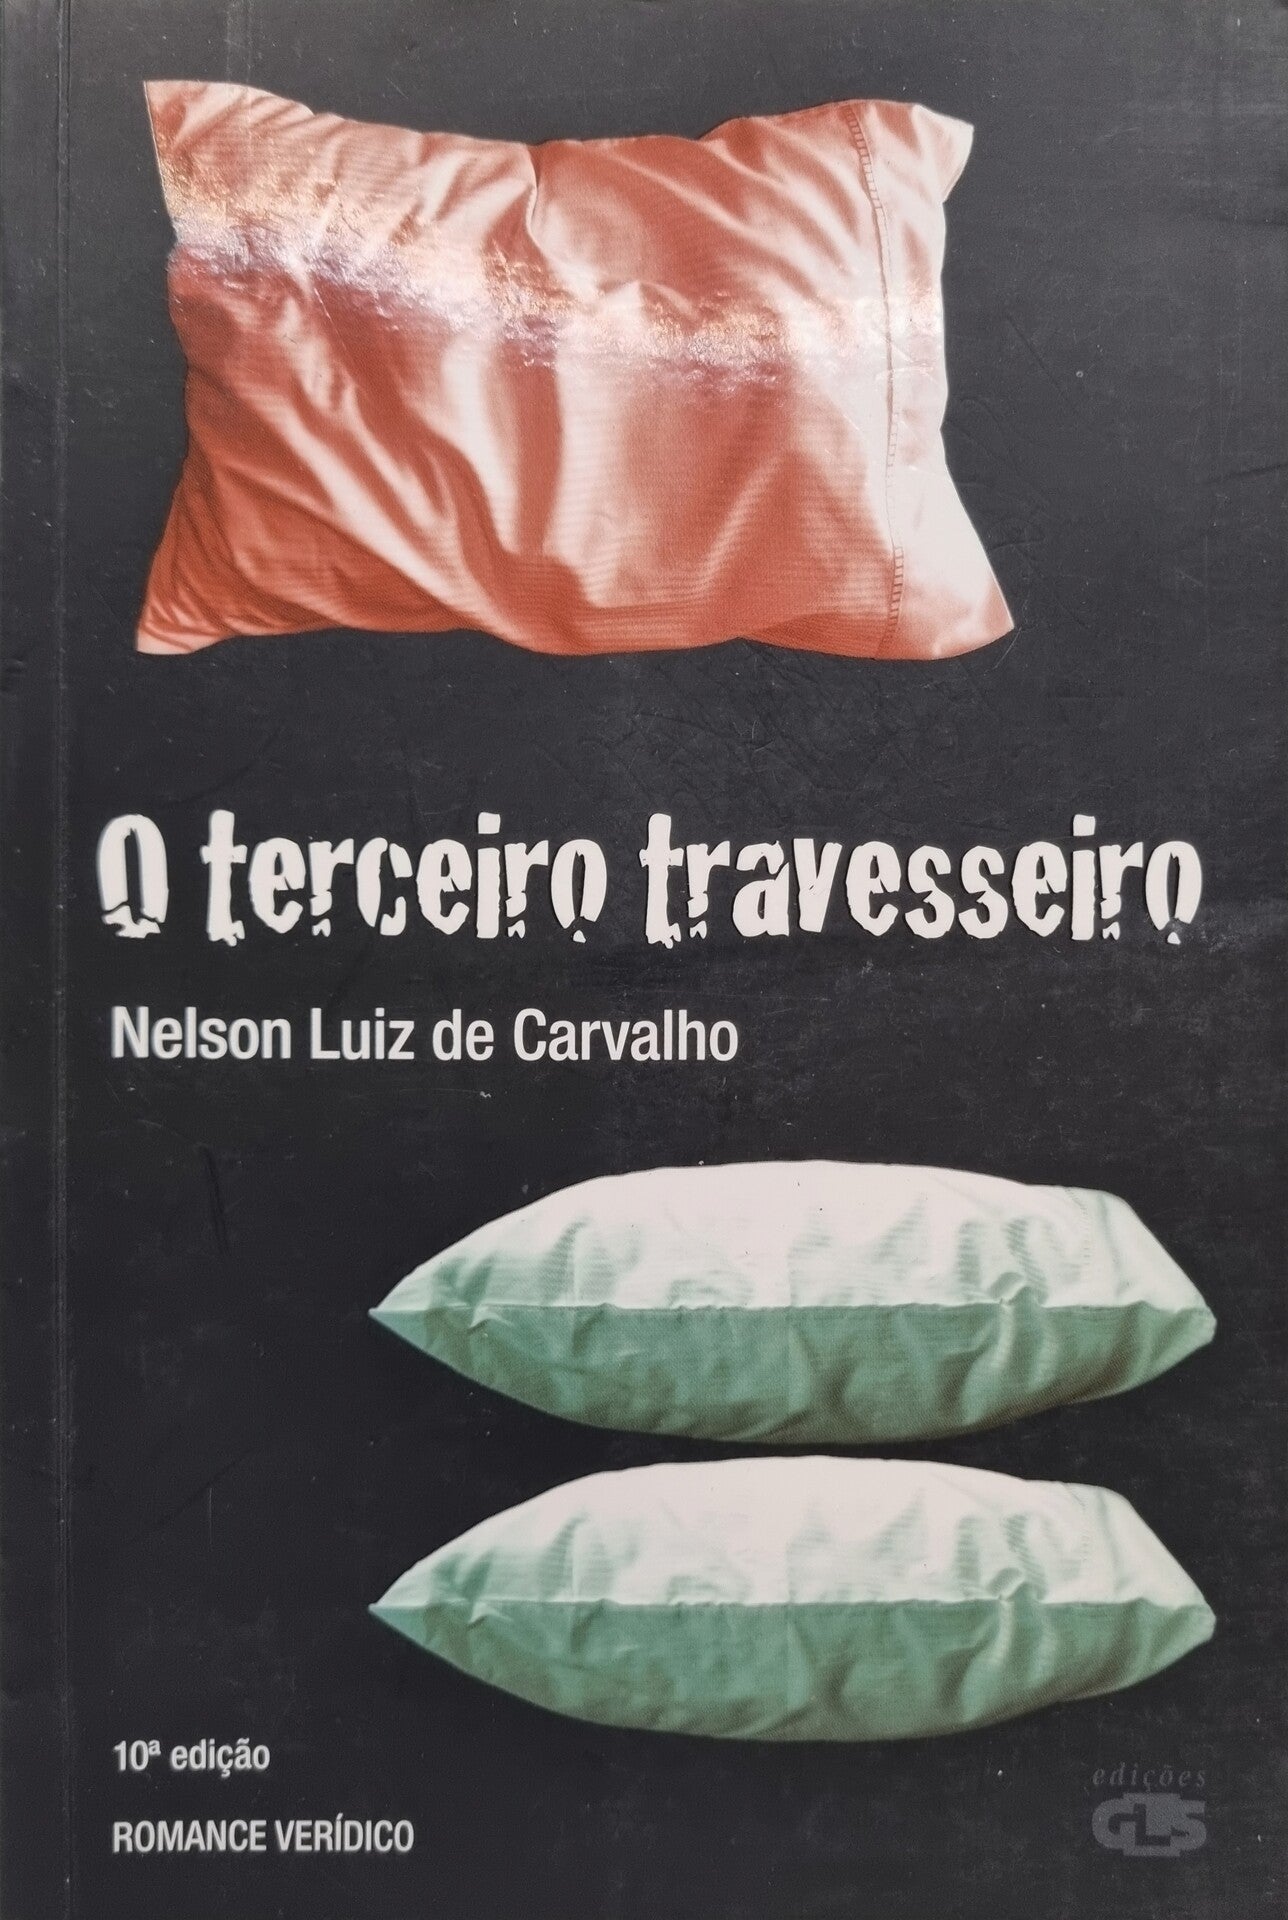 O Terceiro Travesseiro Romance verídico 10ª edição de Nelson Luiz de Carvalho - USADO